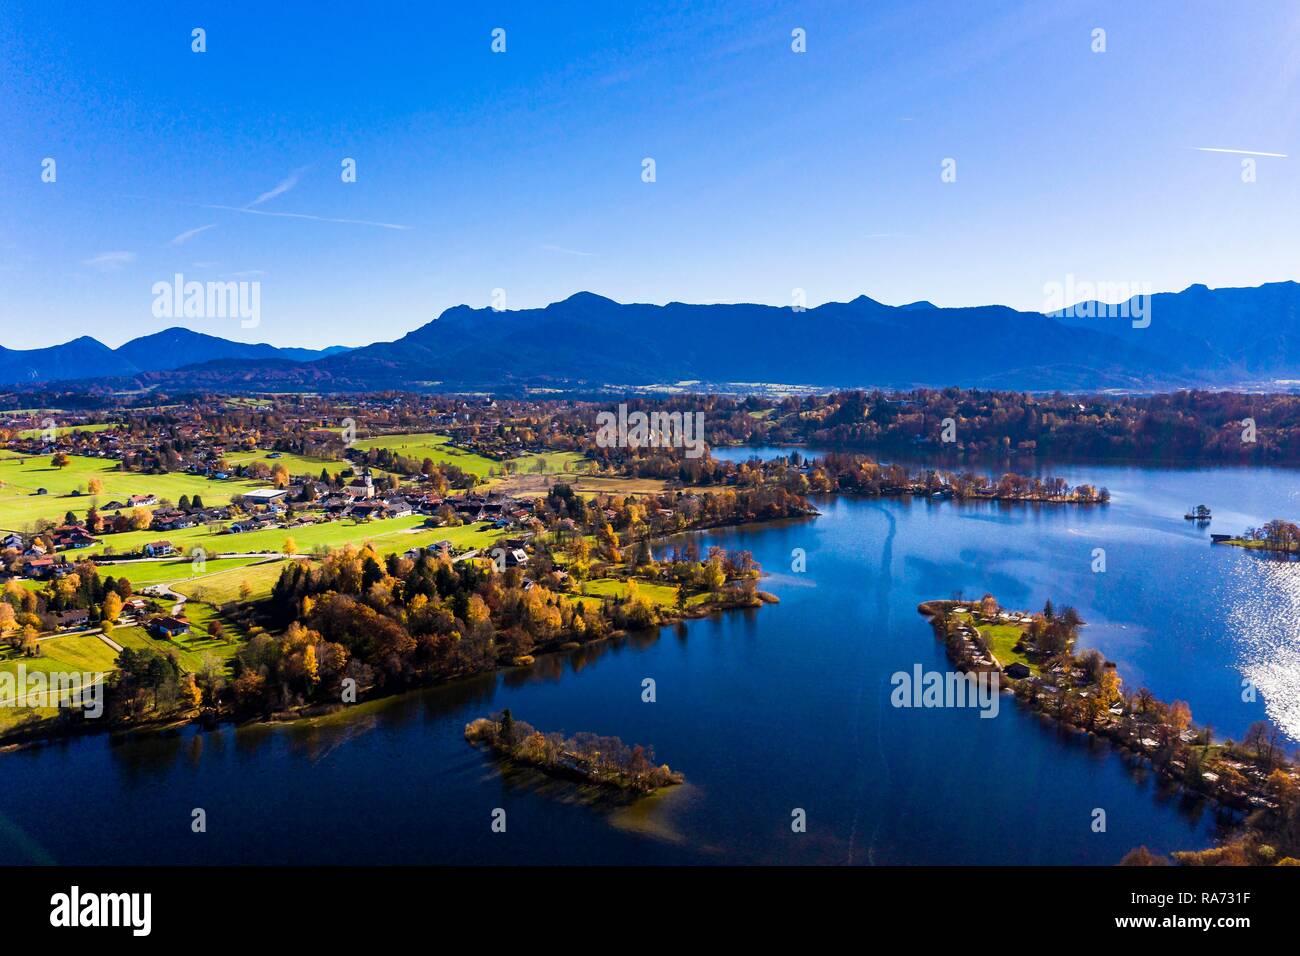 Vista aérea, lago Staffelsee con islas, Rieden, región de Garmisch Partenkirchen, Alta Baviera, Baviera, Alemania Foto de stock